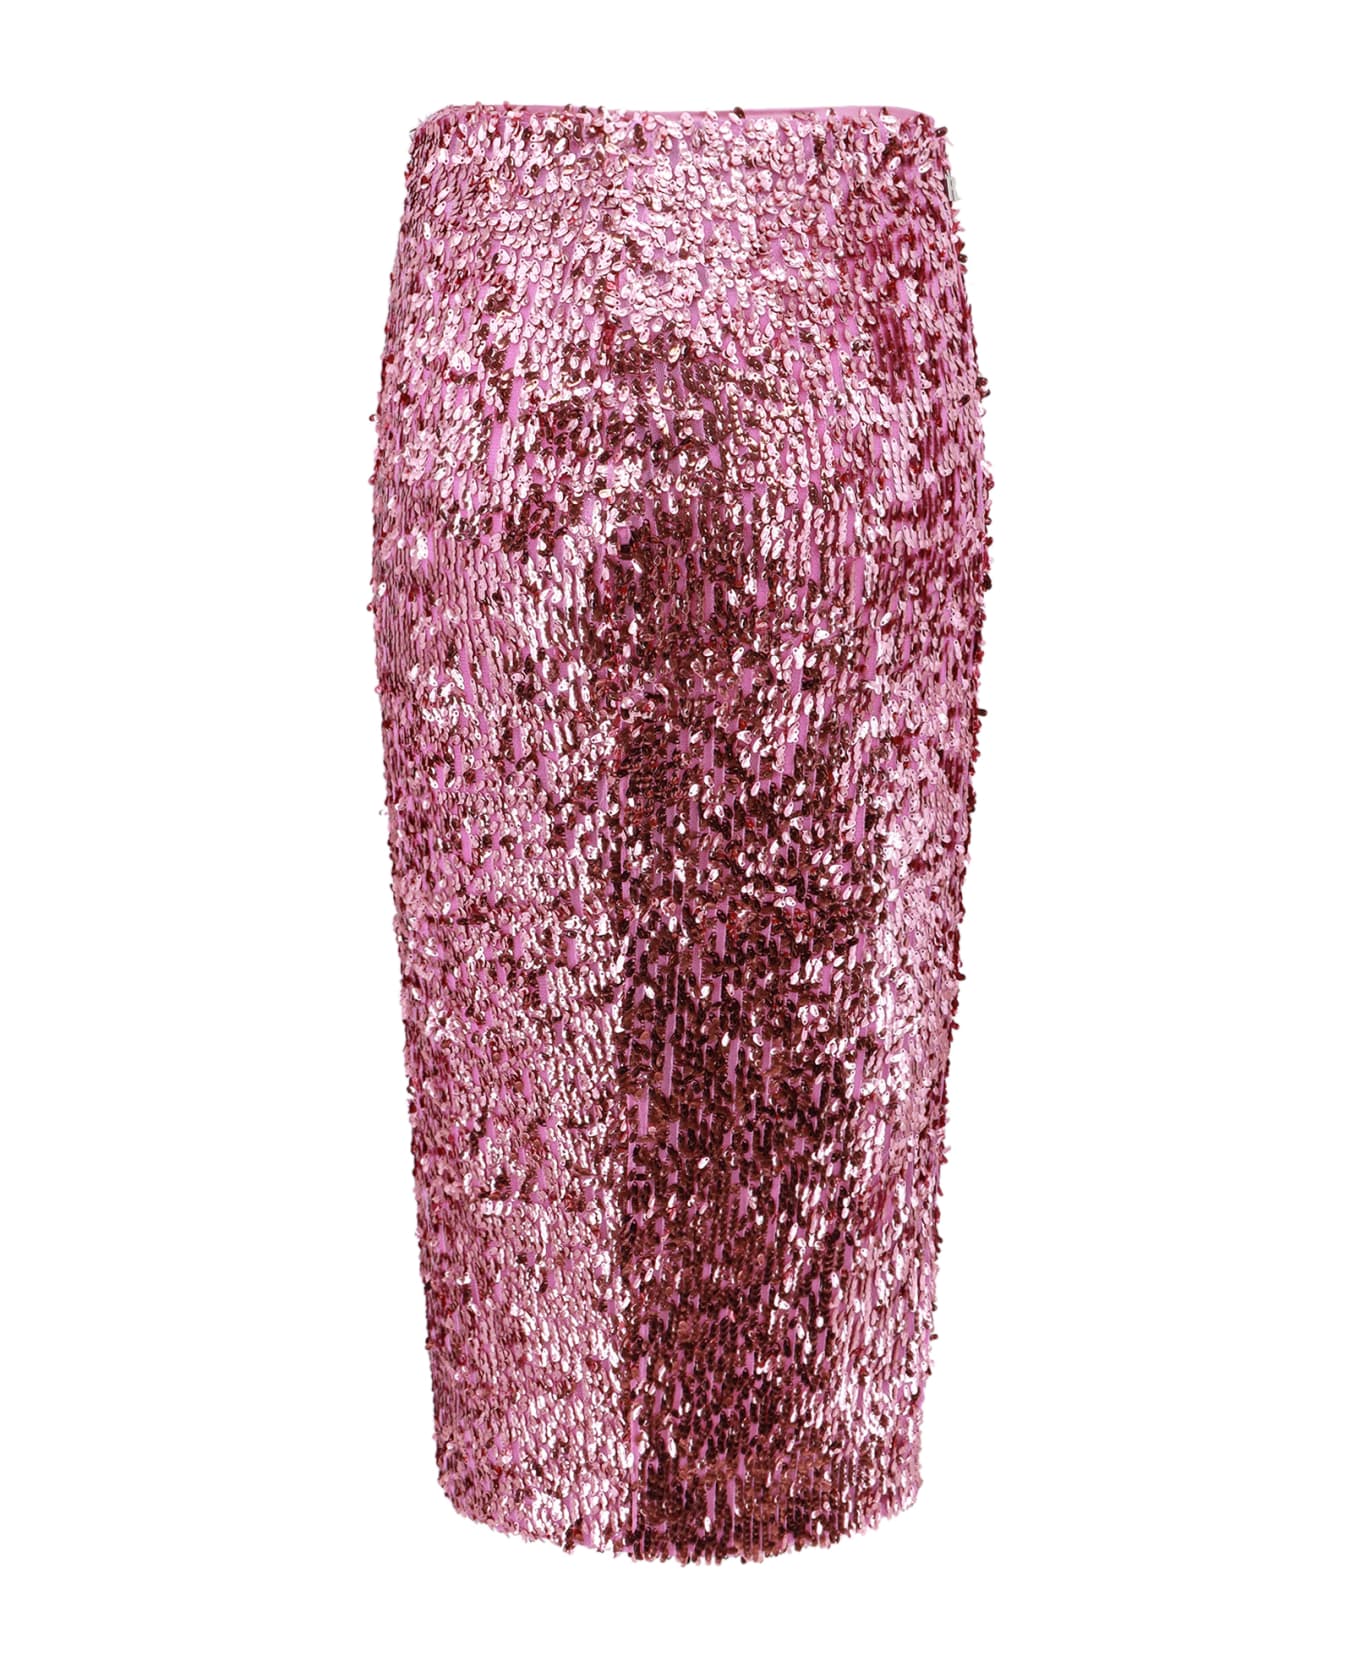 Rotate by Birger Christensen Skirt - Pink スカート